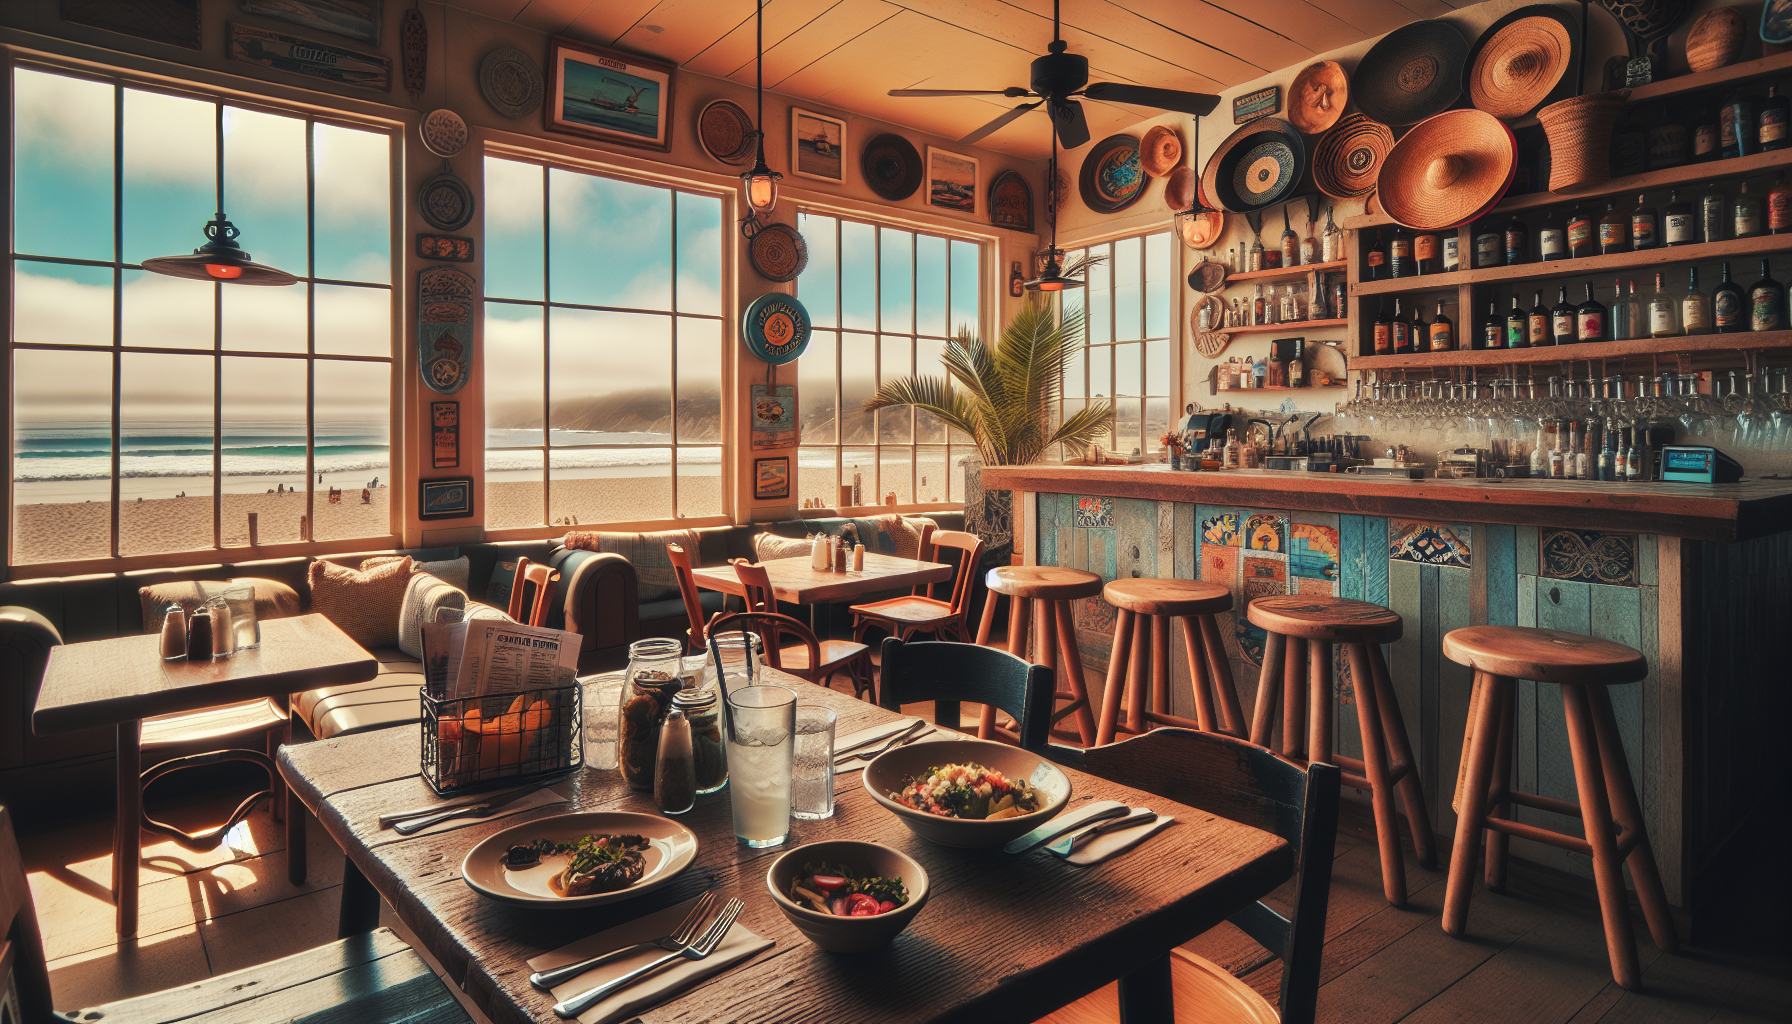 zorros cafe & cantina pismo beach reviews